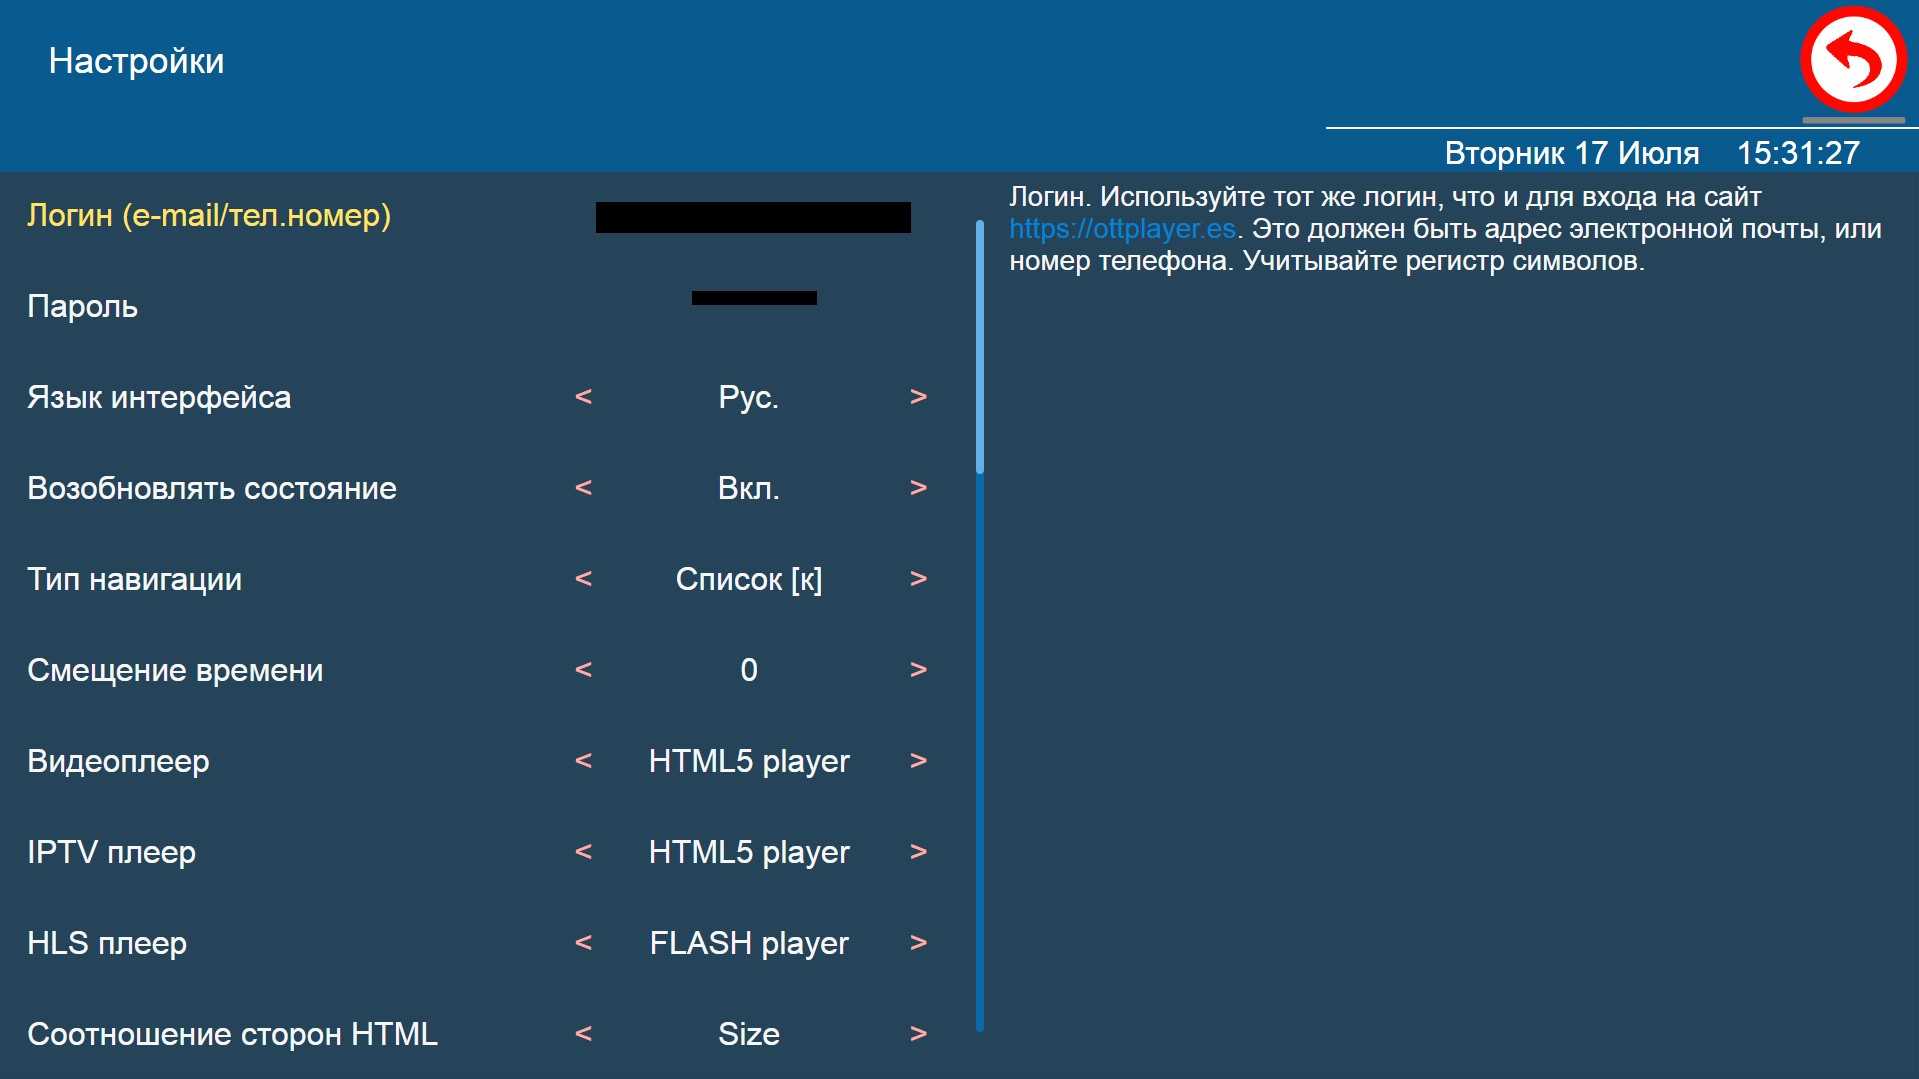 Личный кабинет в ottplayer.es: регистрация, вход, восстановление пароля